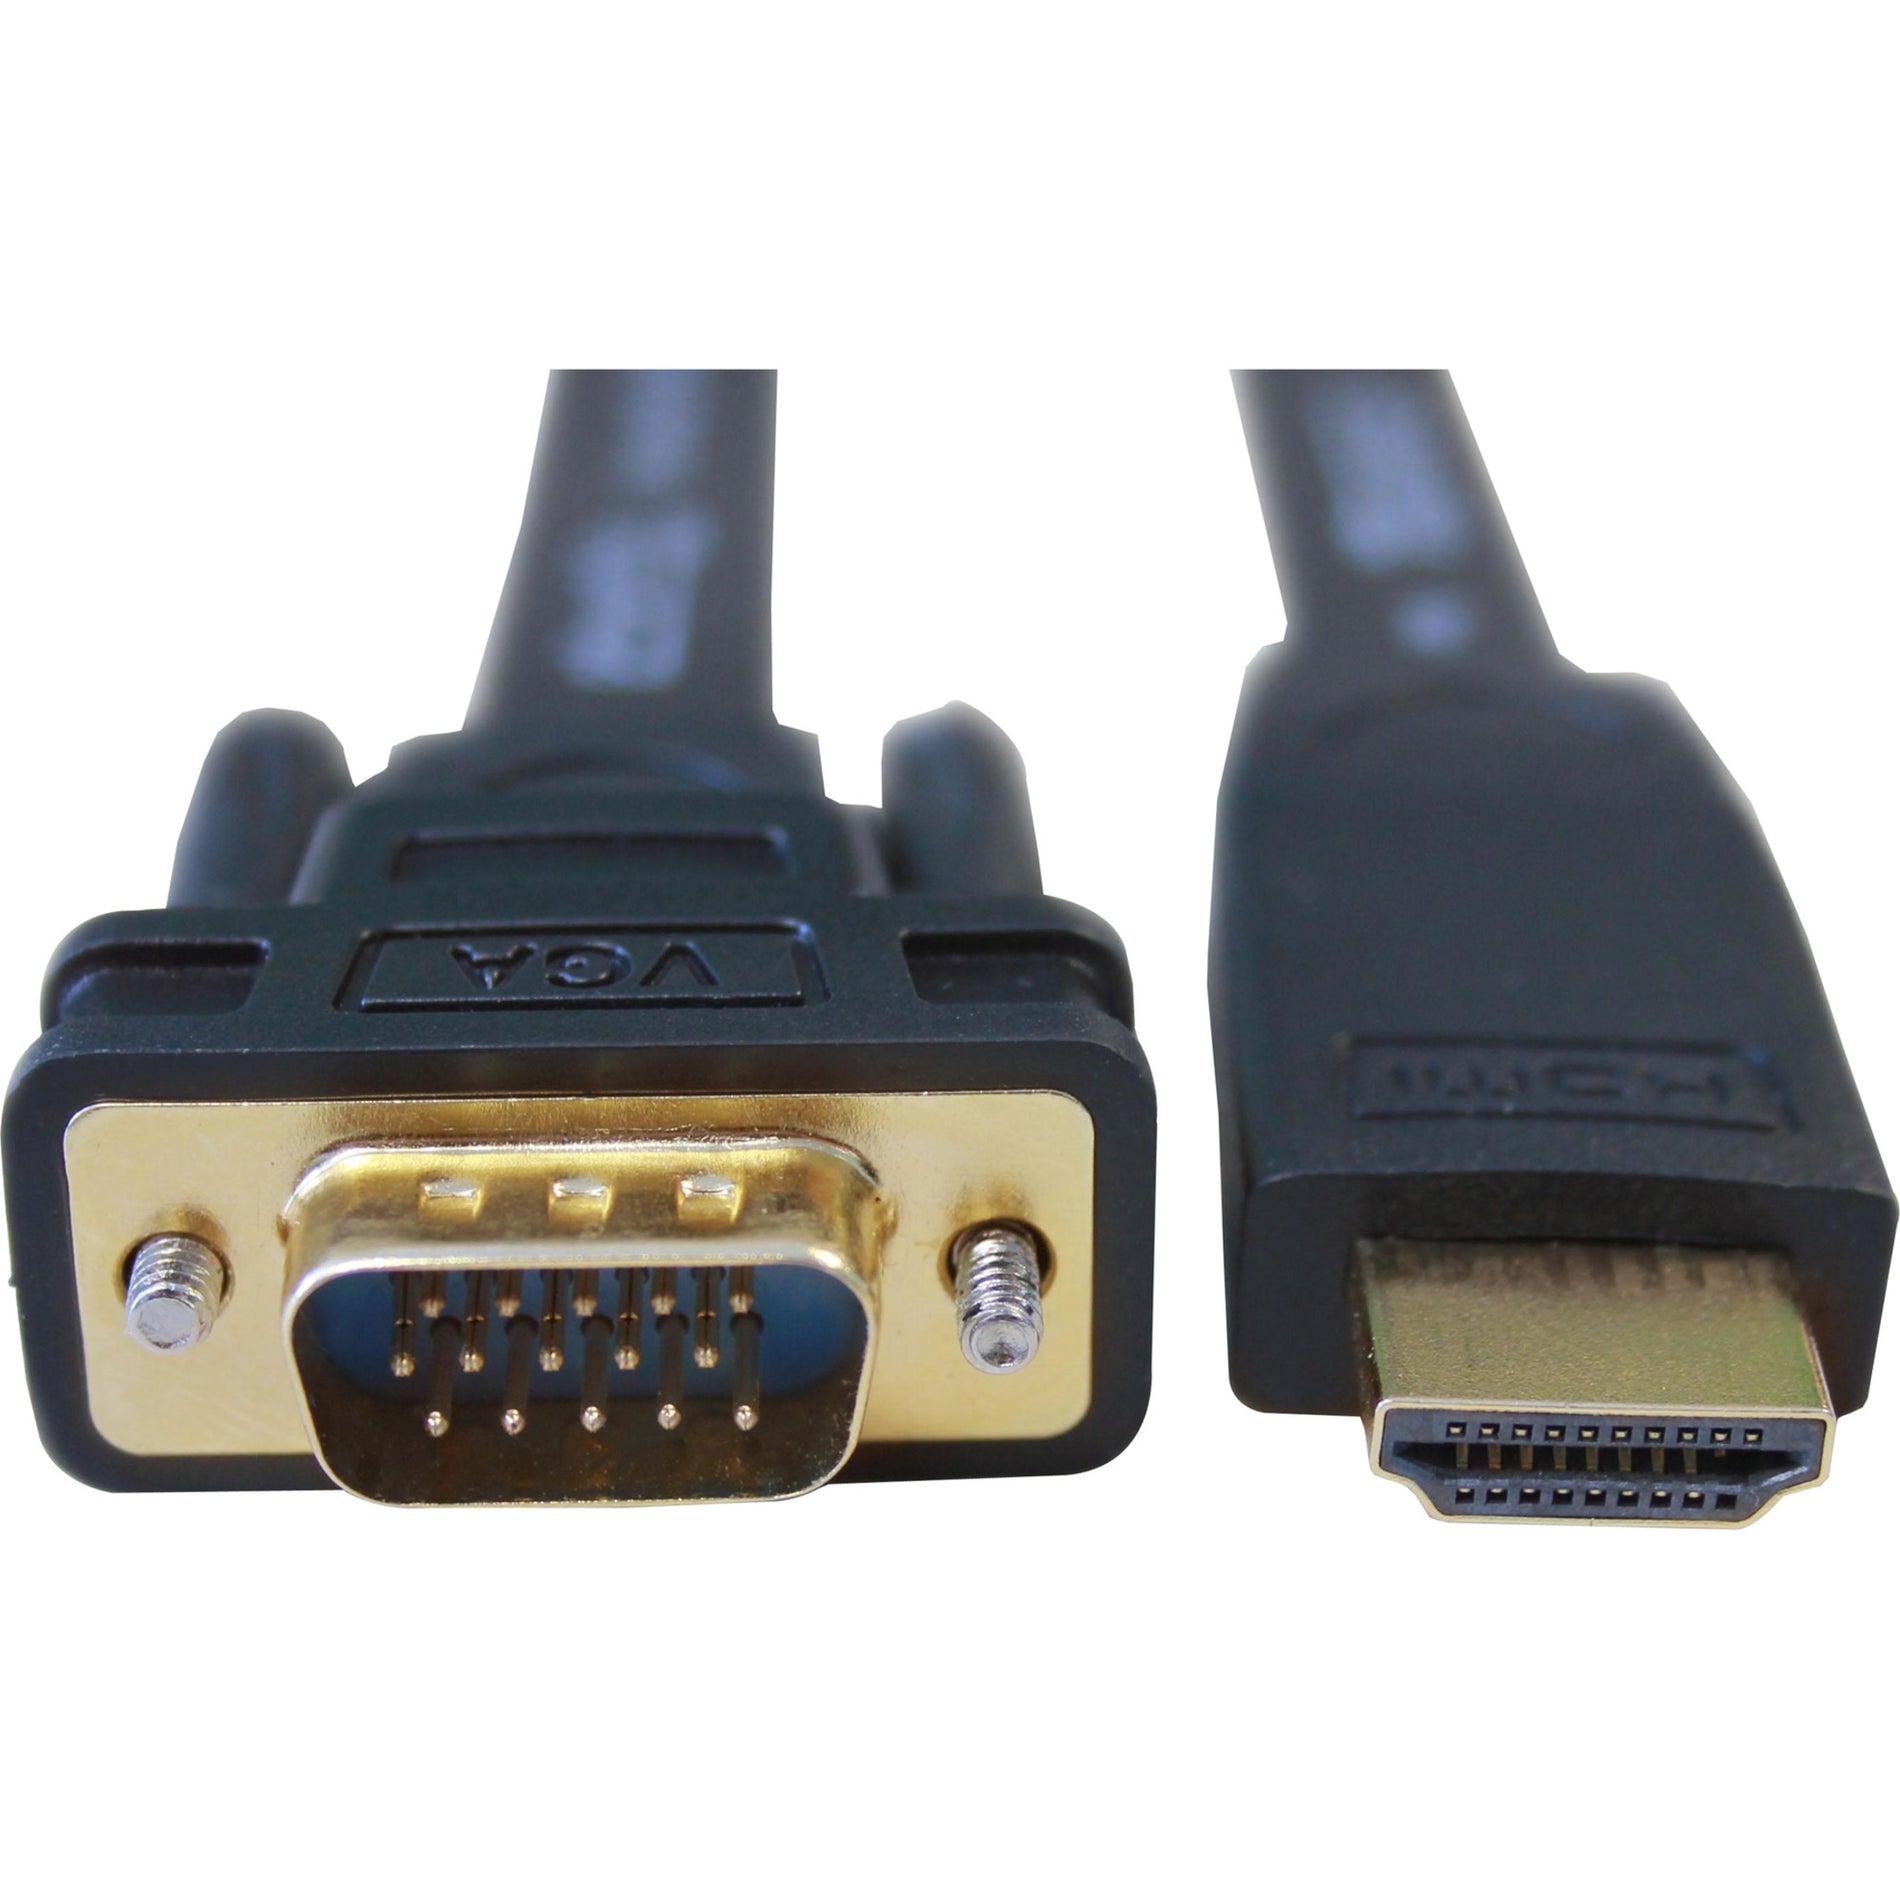 Adattatore cavo attivo HDMI-VGA Plugable HDMI a VGA 6 ft risoluzione supportata 1920 x 1080